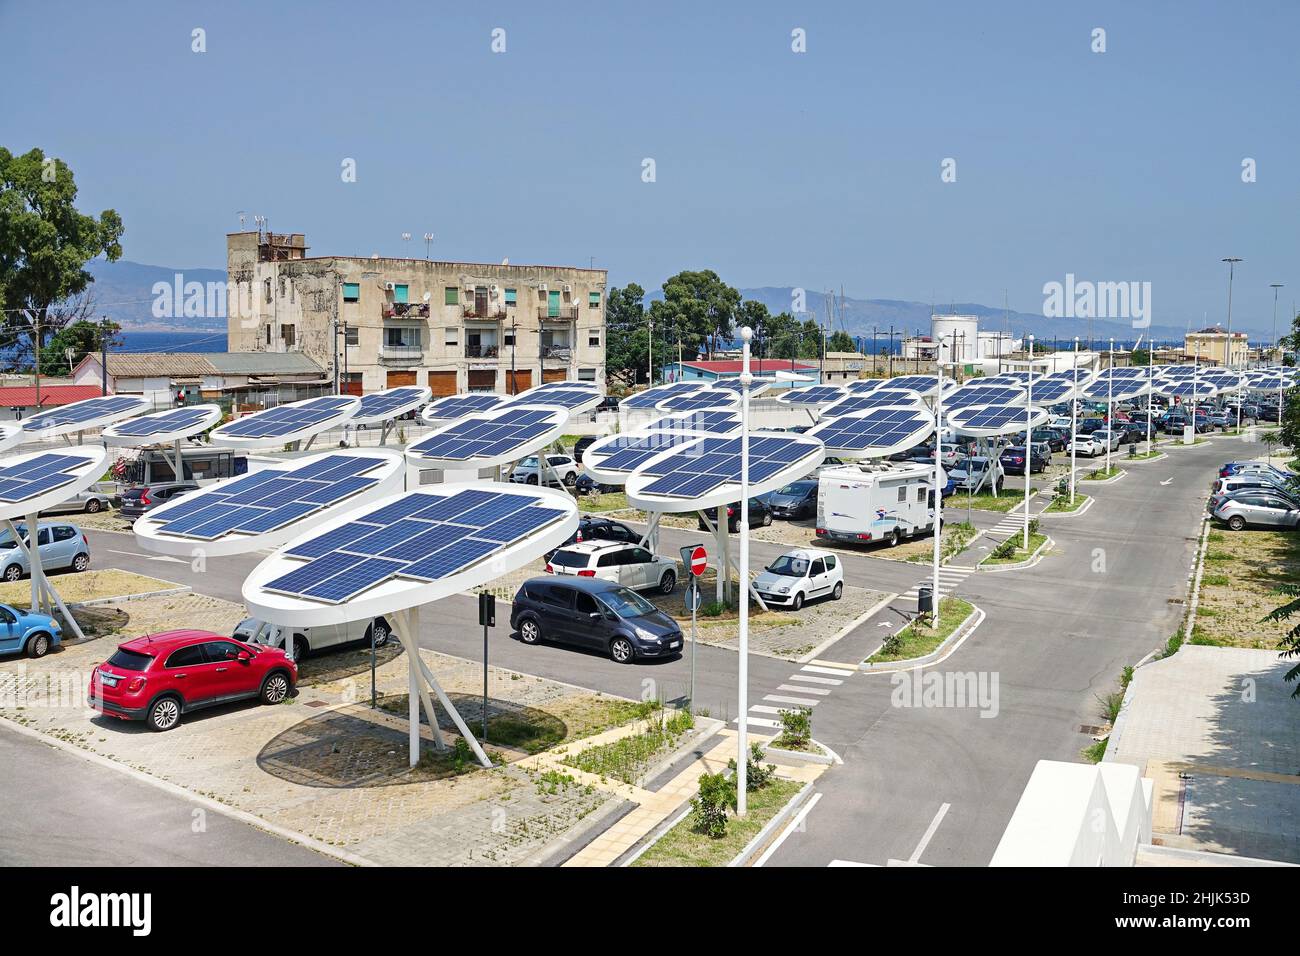 Panneaux solaires dans un parking.Les entreprises installent des sources d'énergie renouvelables pour réduire leur empreinte carbone.Reggio Calabria, Italie - juillet 2021 Banque D'Images